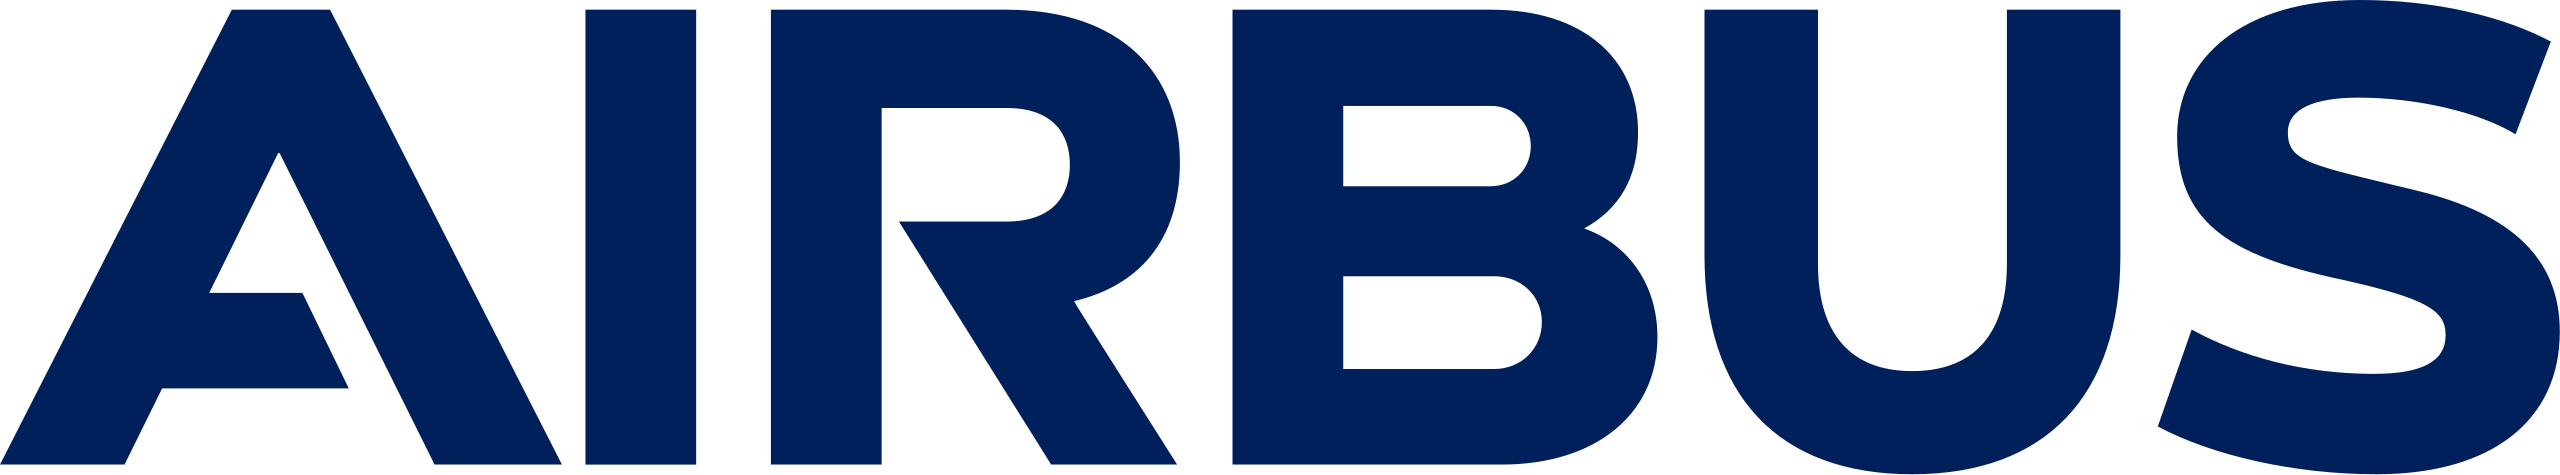 Airbus - Logo